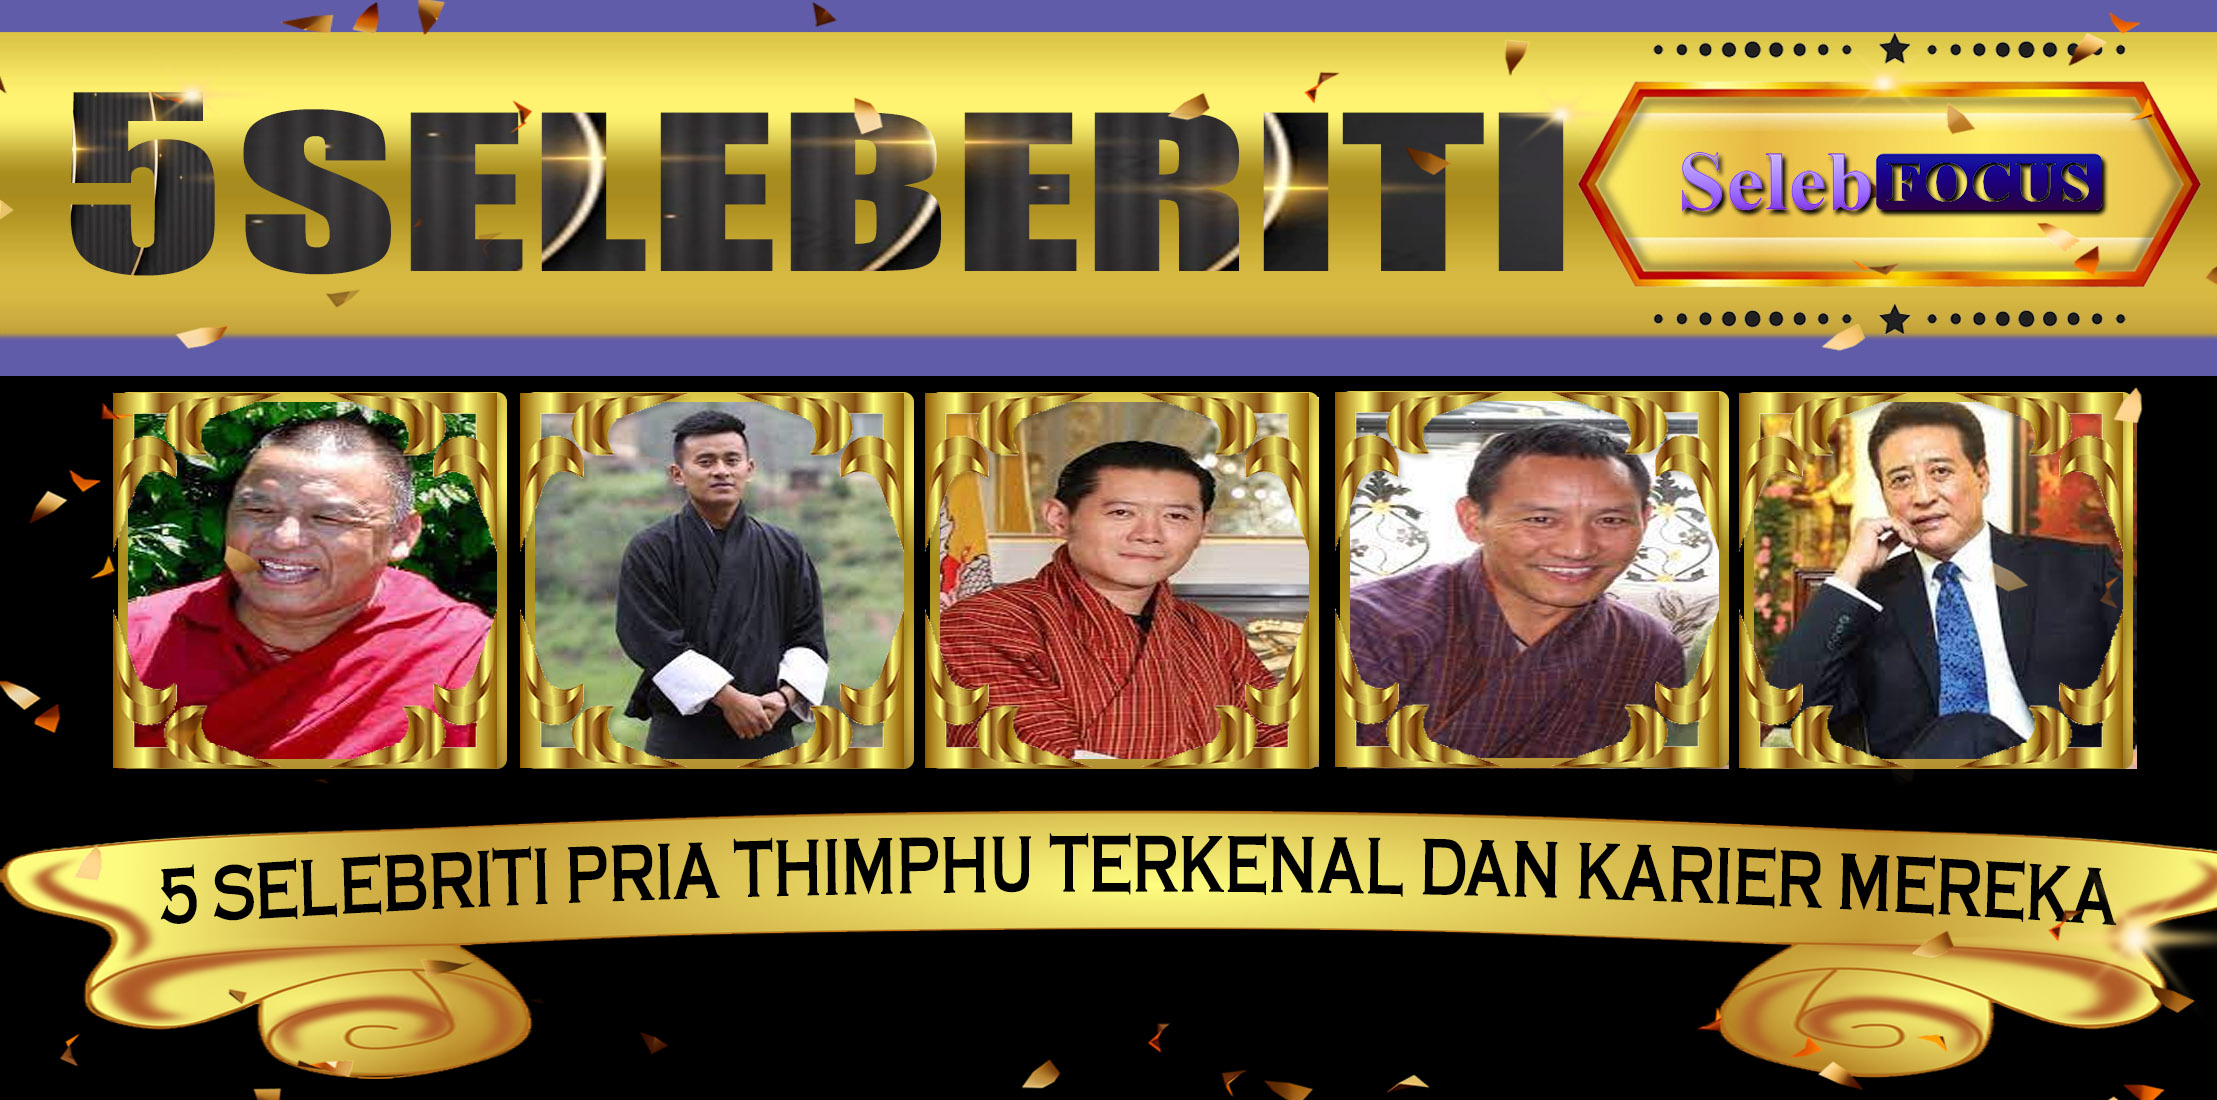 5 Selebriti Pria Thimphu